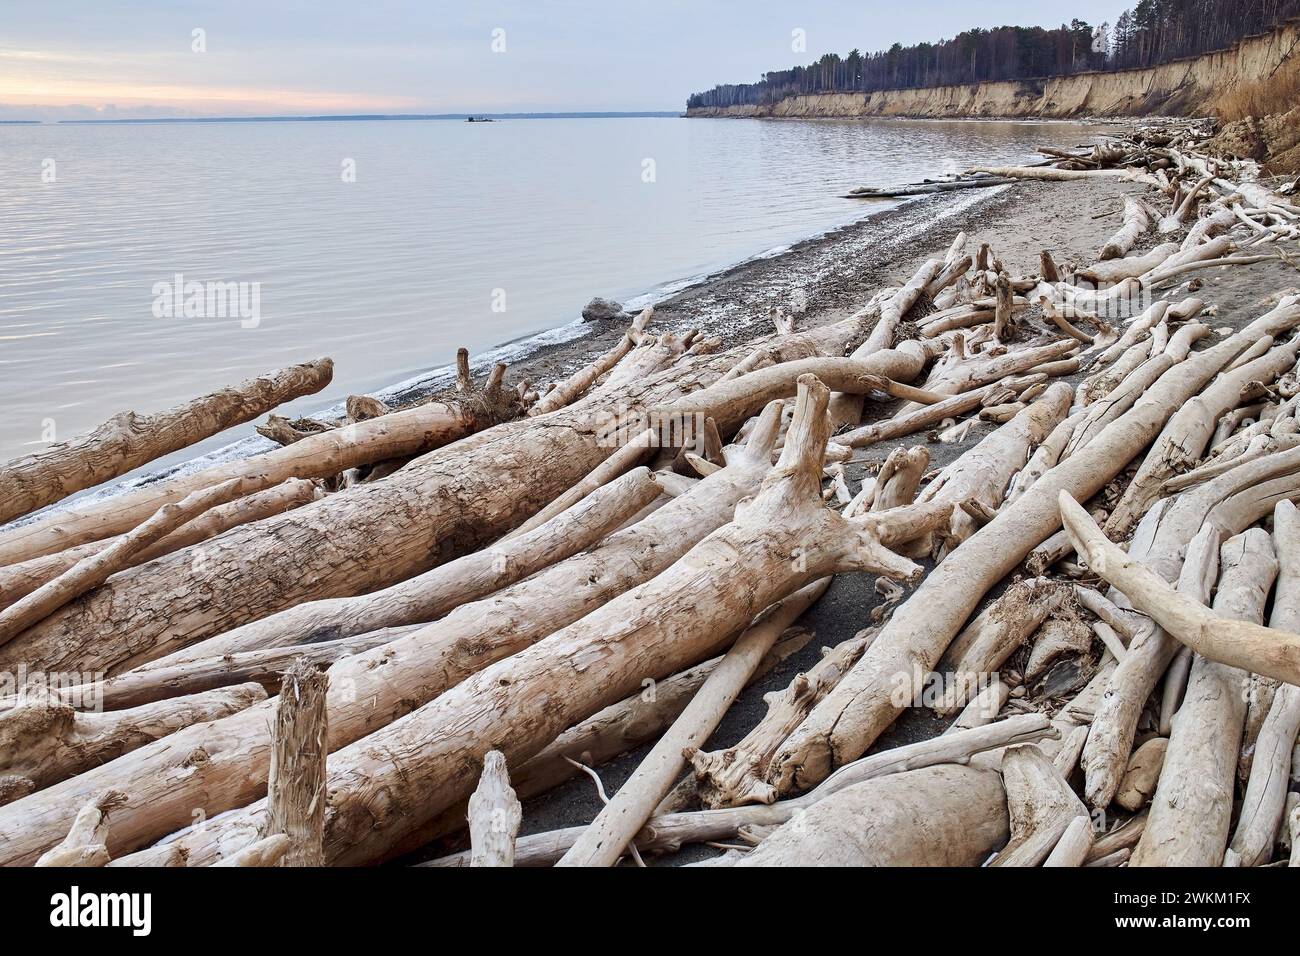 Les arbres tombés d'une falaise de sable se trouvent sur le bord de la mer. Beaucoup de bois flotté, destruction côtière. L'eau érode la côte. Paysage naturel hors saison. Sol Banque D'Images